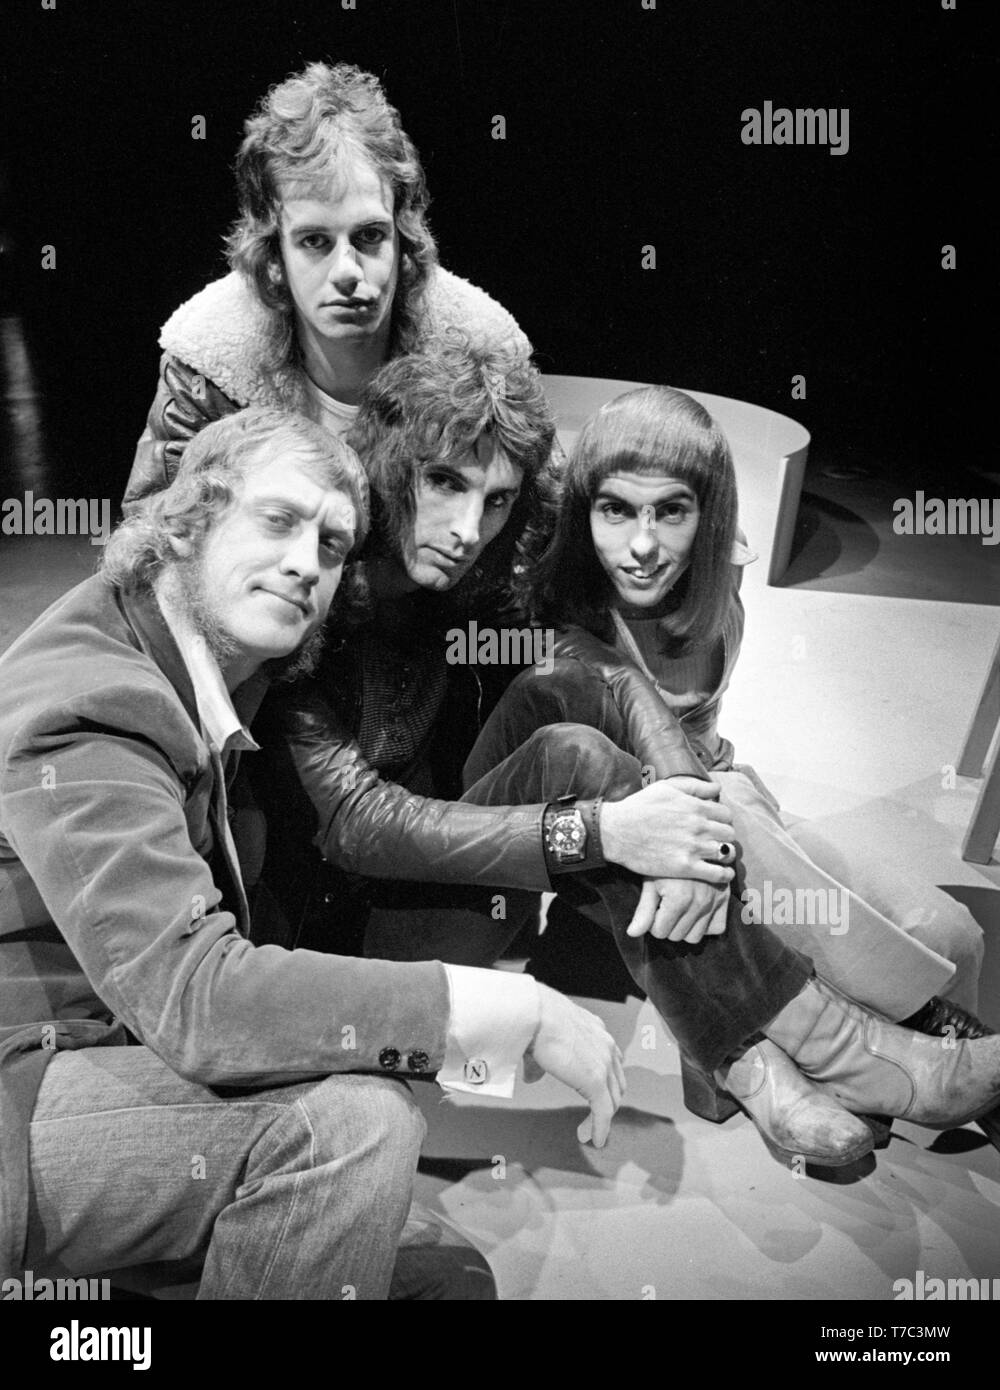 Amsterdam, Paesi Bassi - 01 gennaio: Slade poste ad Amsterdam, nei Paesi Bassi nel 1972 L-R Noddy titolare, Don Powell, Dave Hill, , Jim Lea (sul retro) Foto Stock